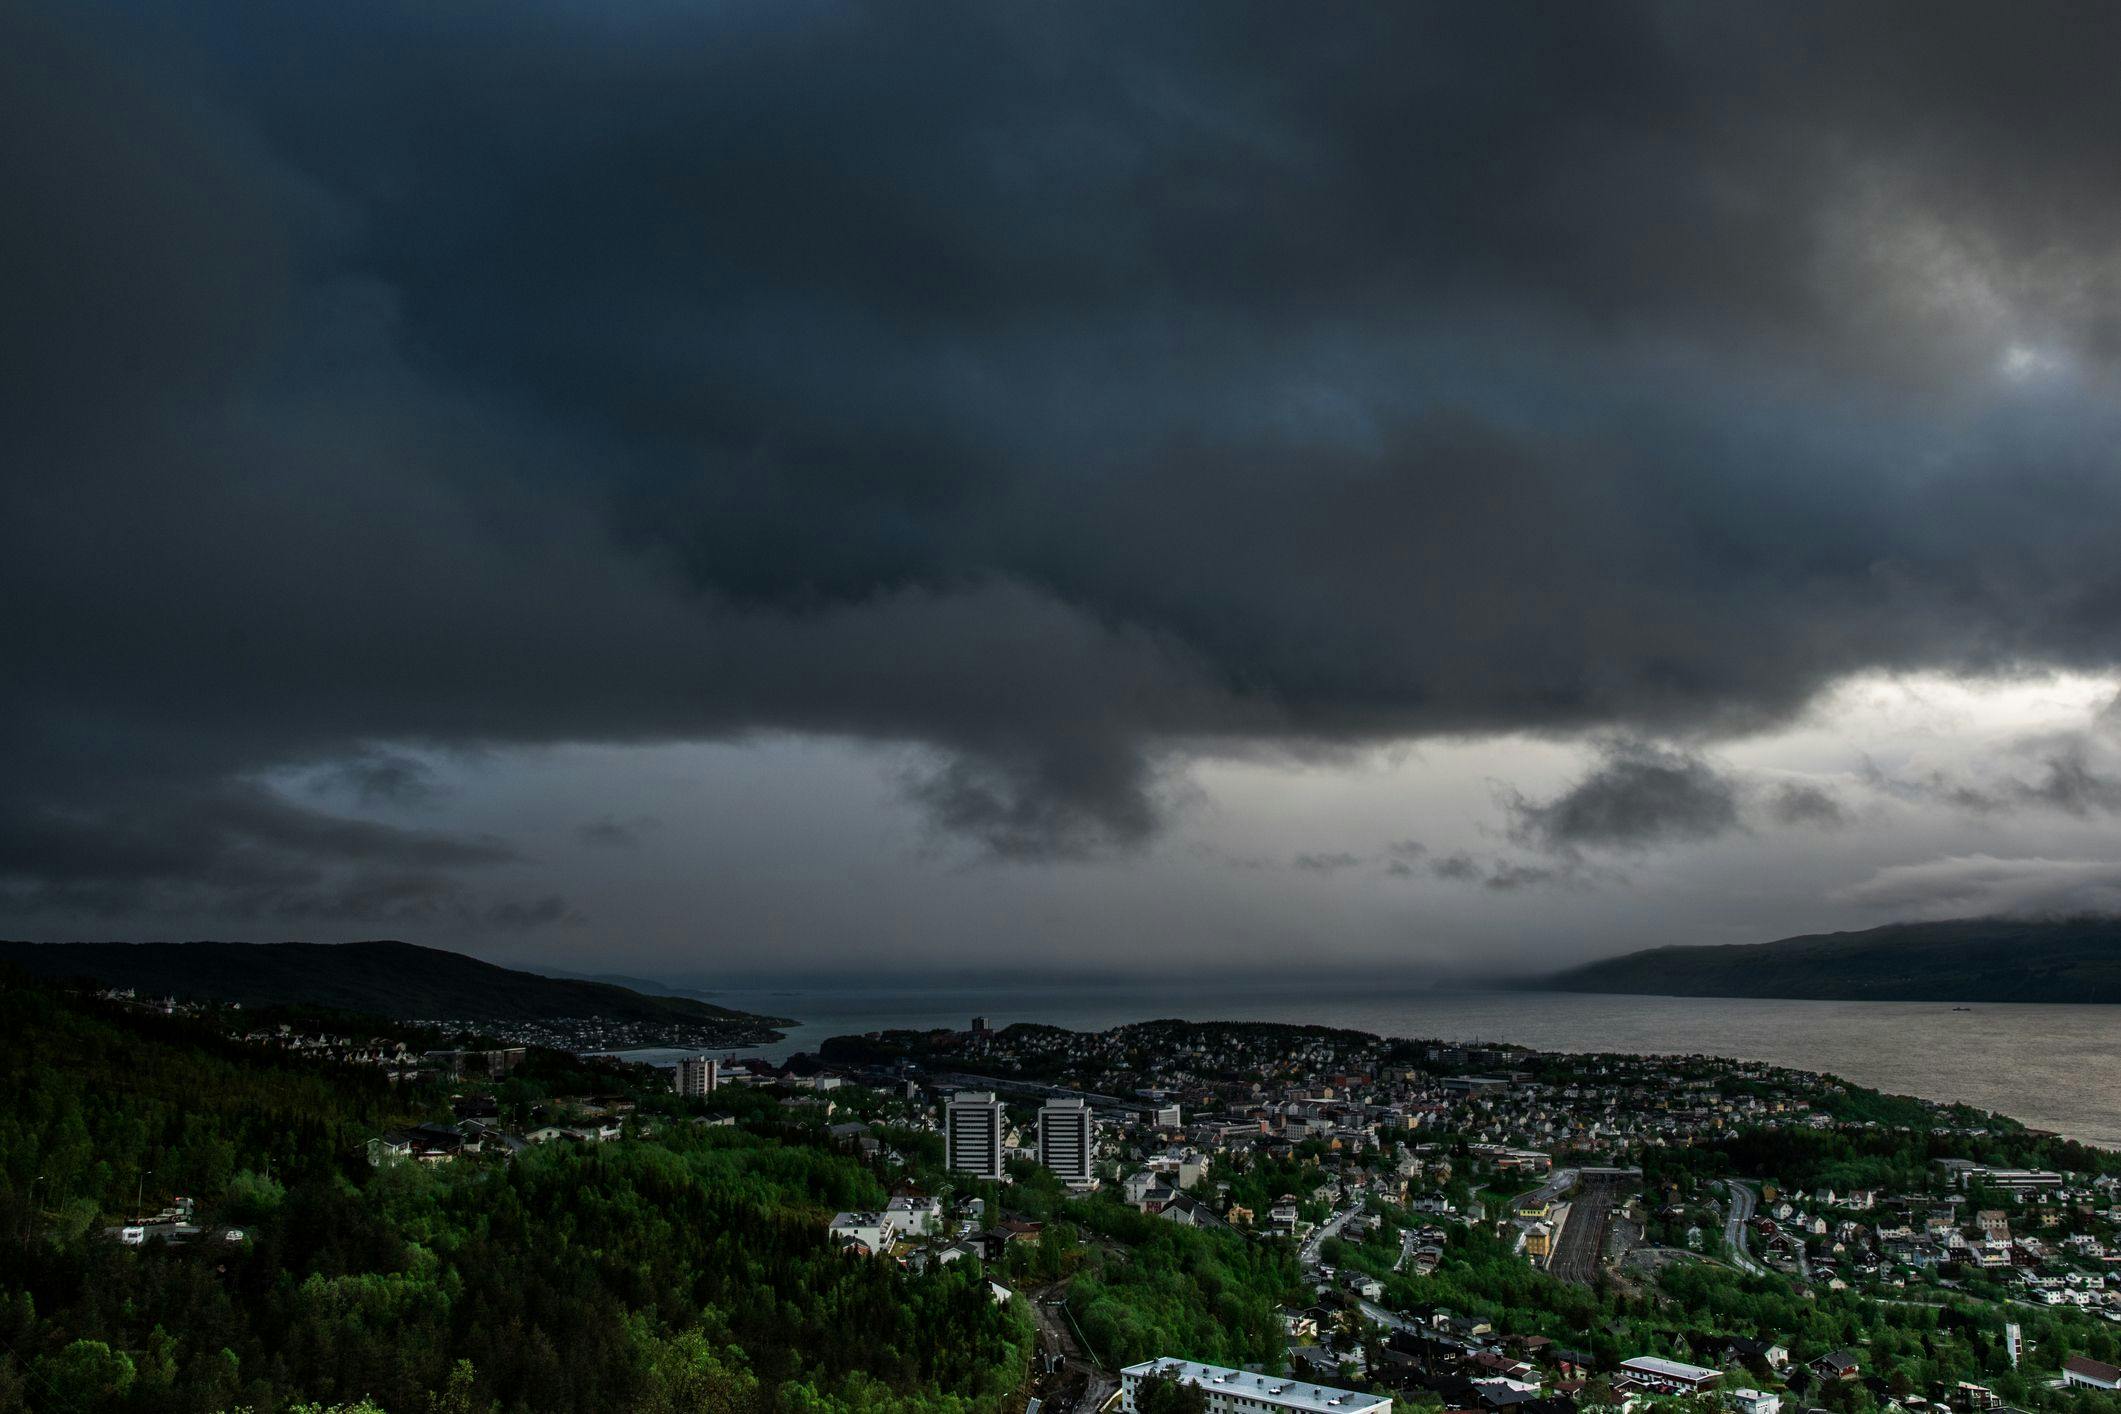 Fra en utsikt ser vi utover Narvik, det er grått og mørkt med tunge skyer over byen.